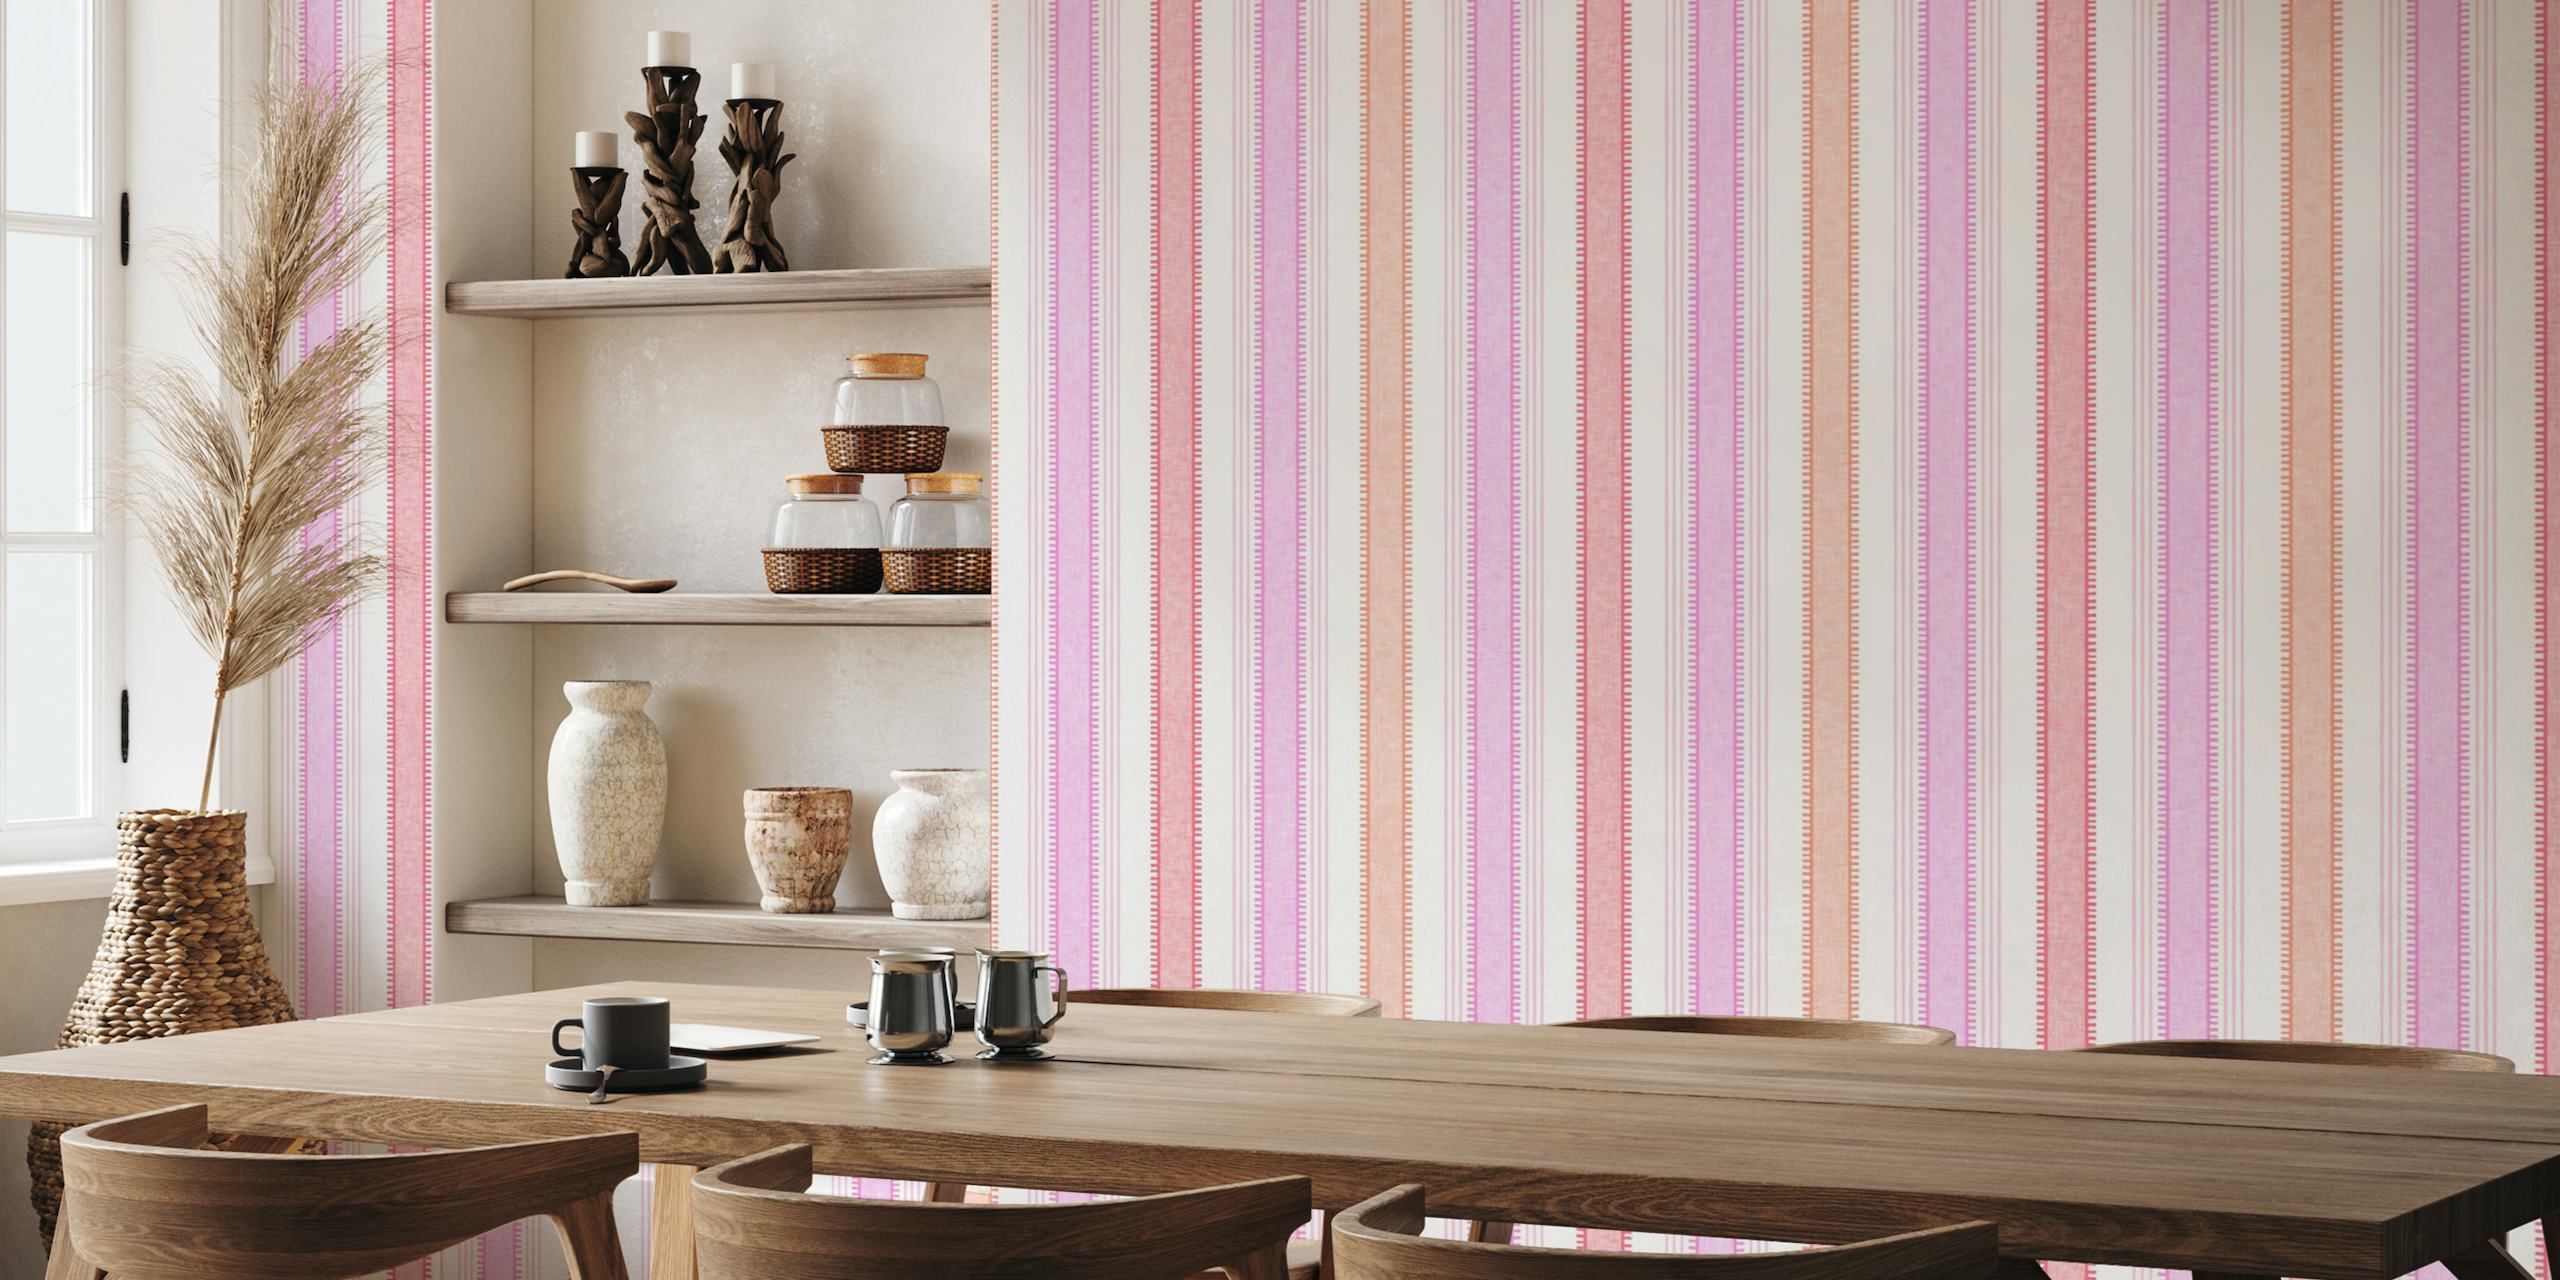 Livlig rosa och vit fransk tickrandig väggmålning